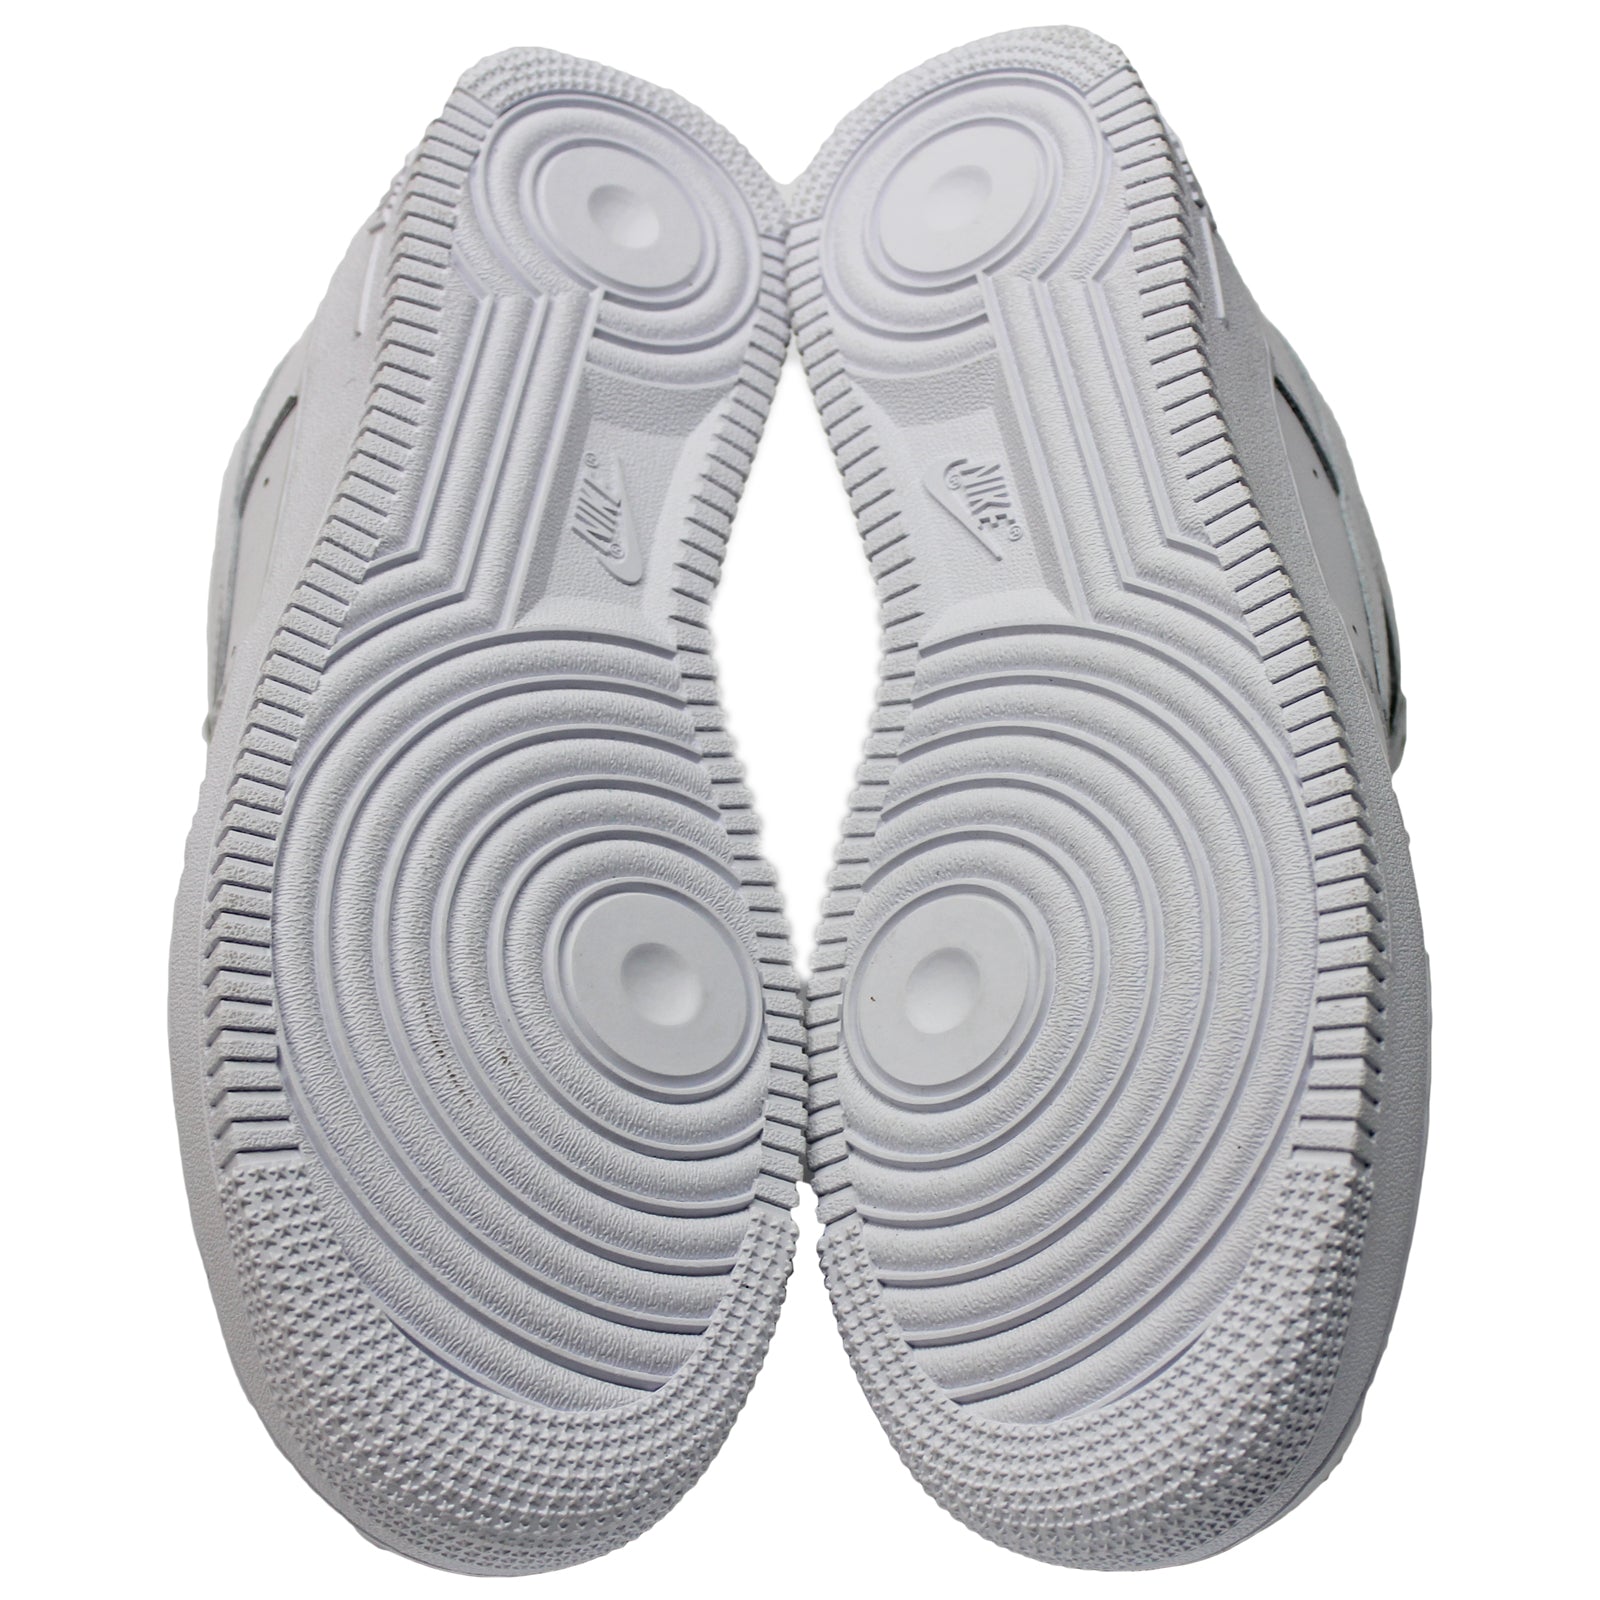 Nike Air Force I 07 Weiße Lowtop-Sneaker aus Leder für Herren - UK 9